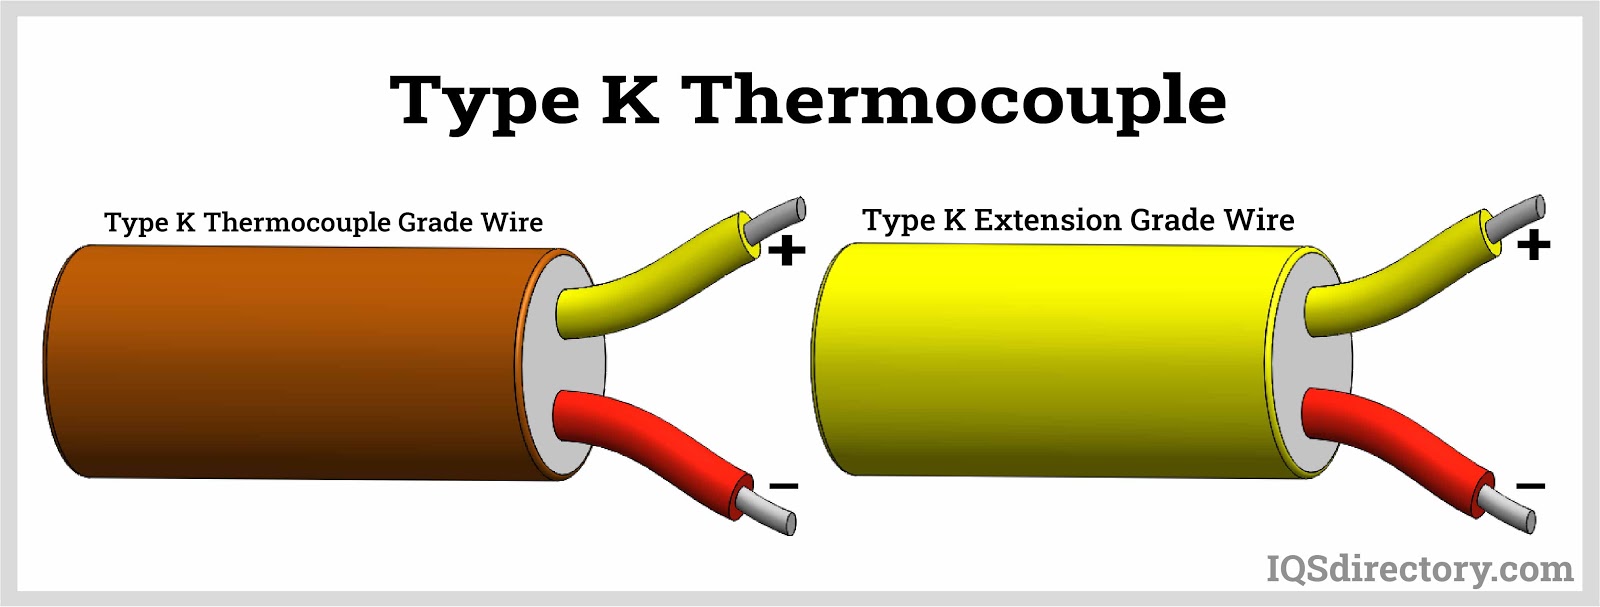 Type K Thermocouple